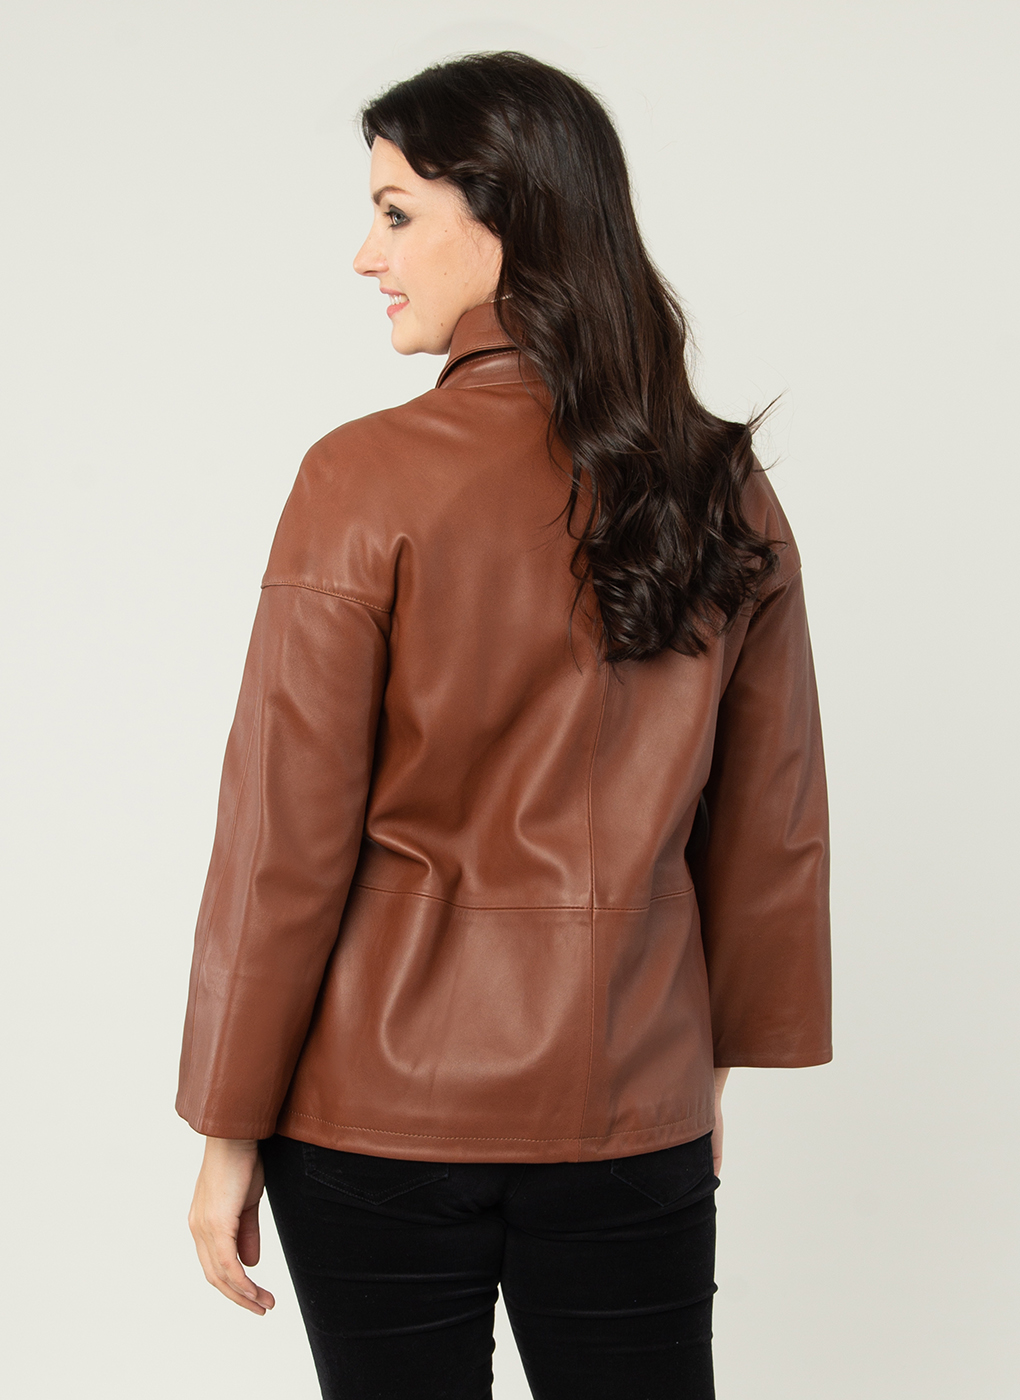 Кожаная куртка женская Каляев 52511 коричневая 56 RU